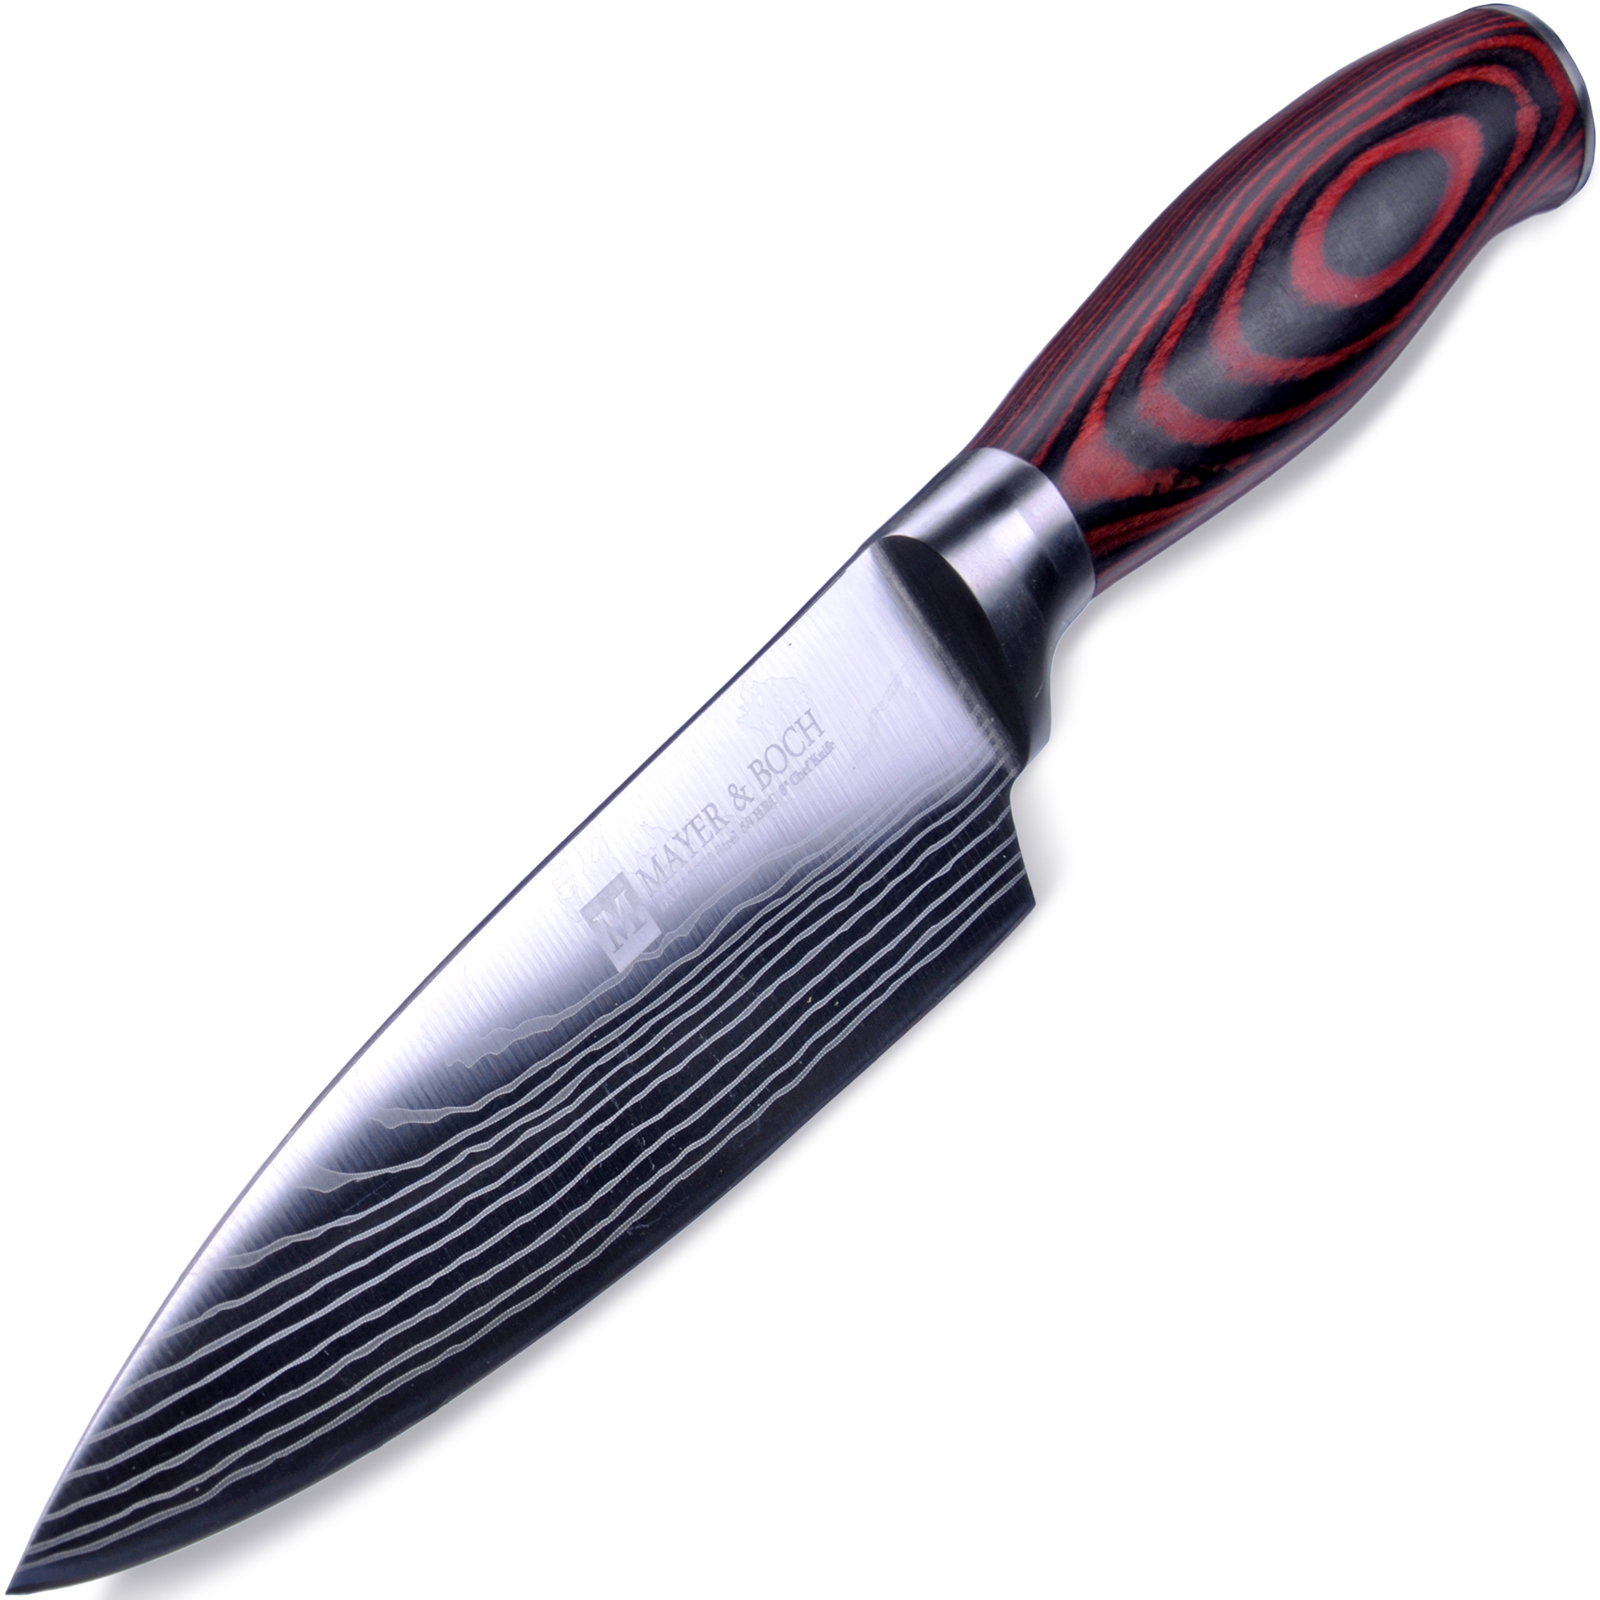 фото Нож поварской Mayer & Boch Domascus, цвет: красный, черный, серебристый, длина лезвия 16 см